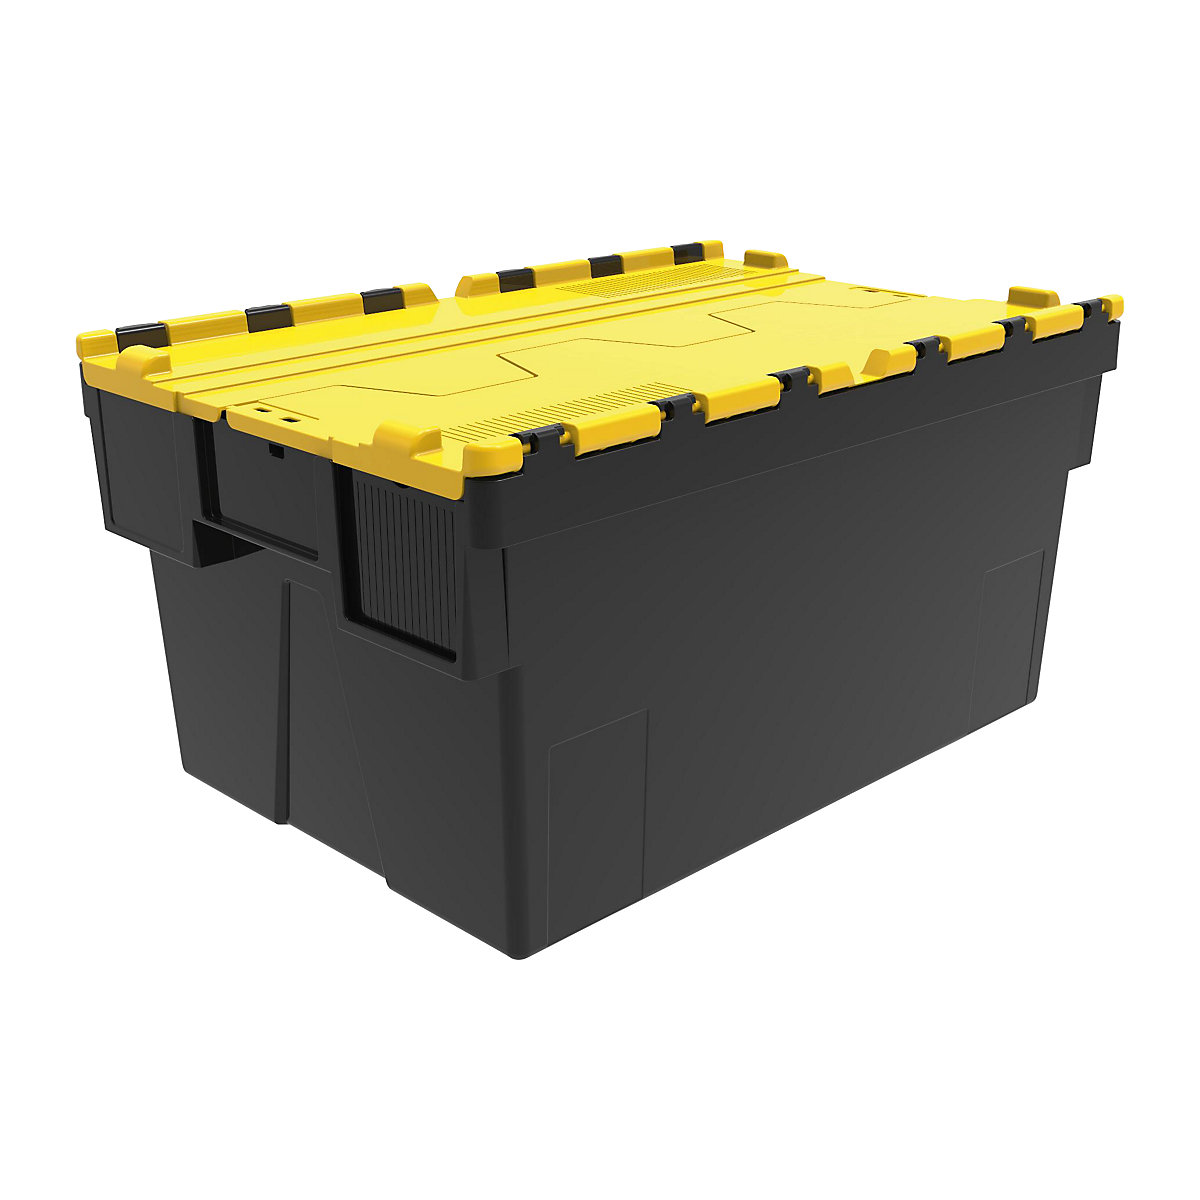 Többször használható rakásolható tároló, h x szé x ma 600 x 400 x 310 mm, cs. e. 5 db, fekete színben, sárga fedéllel